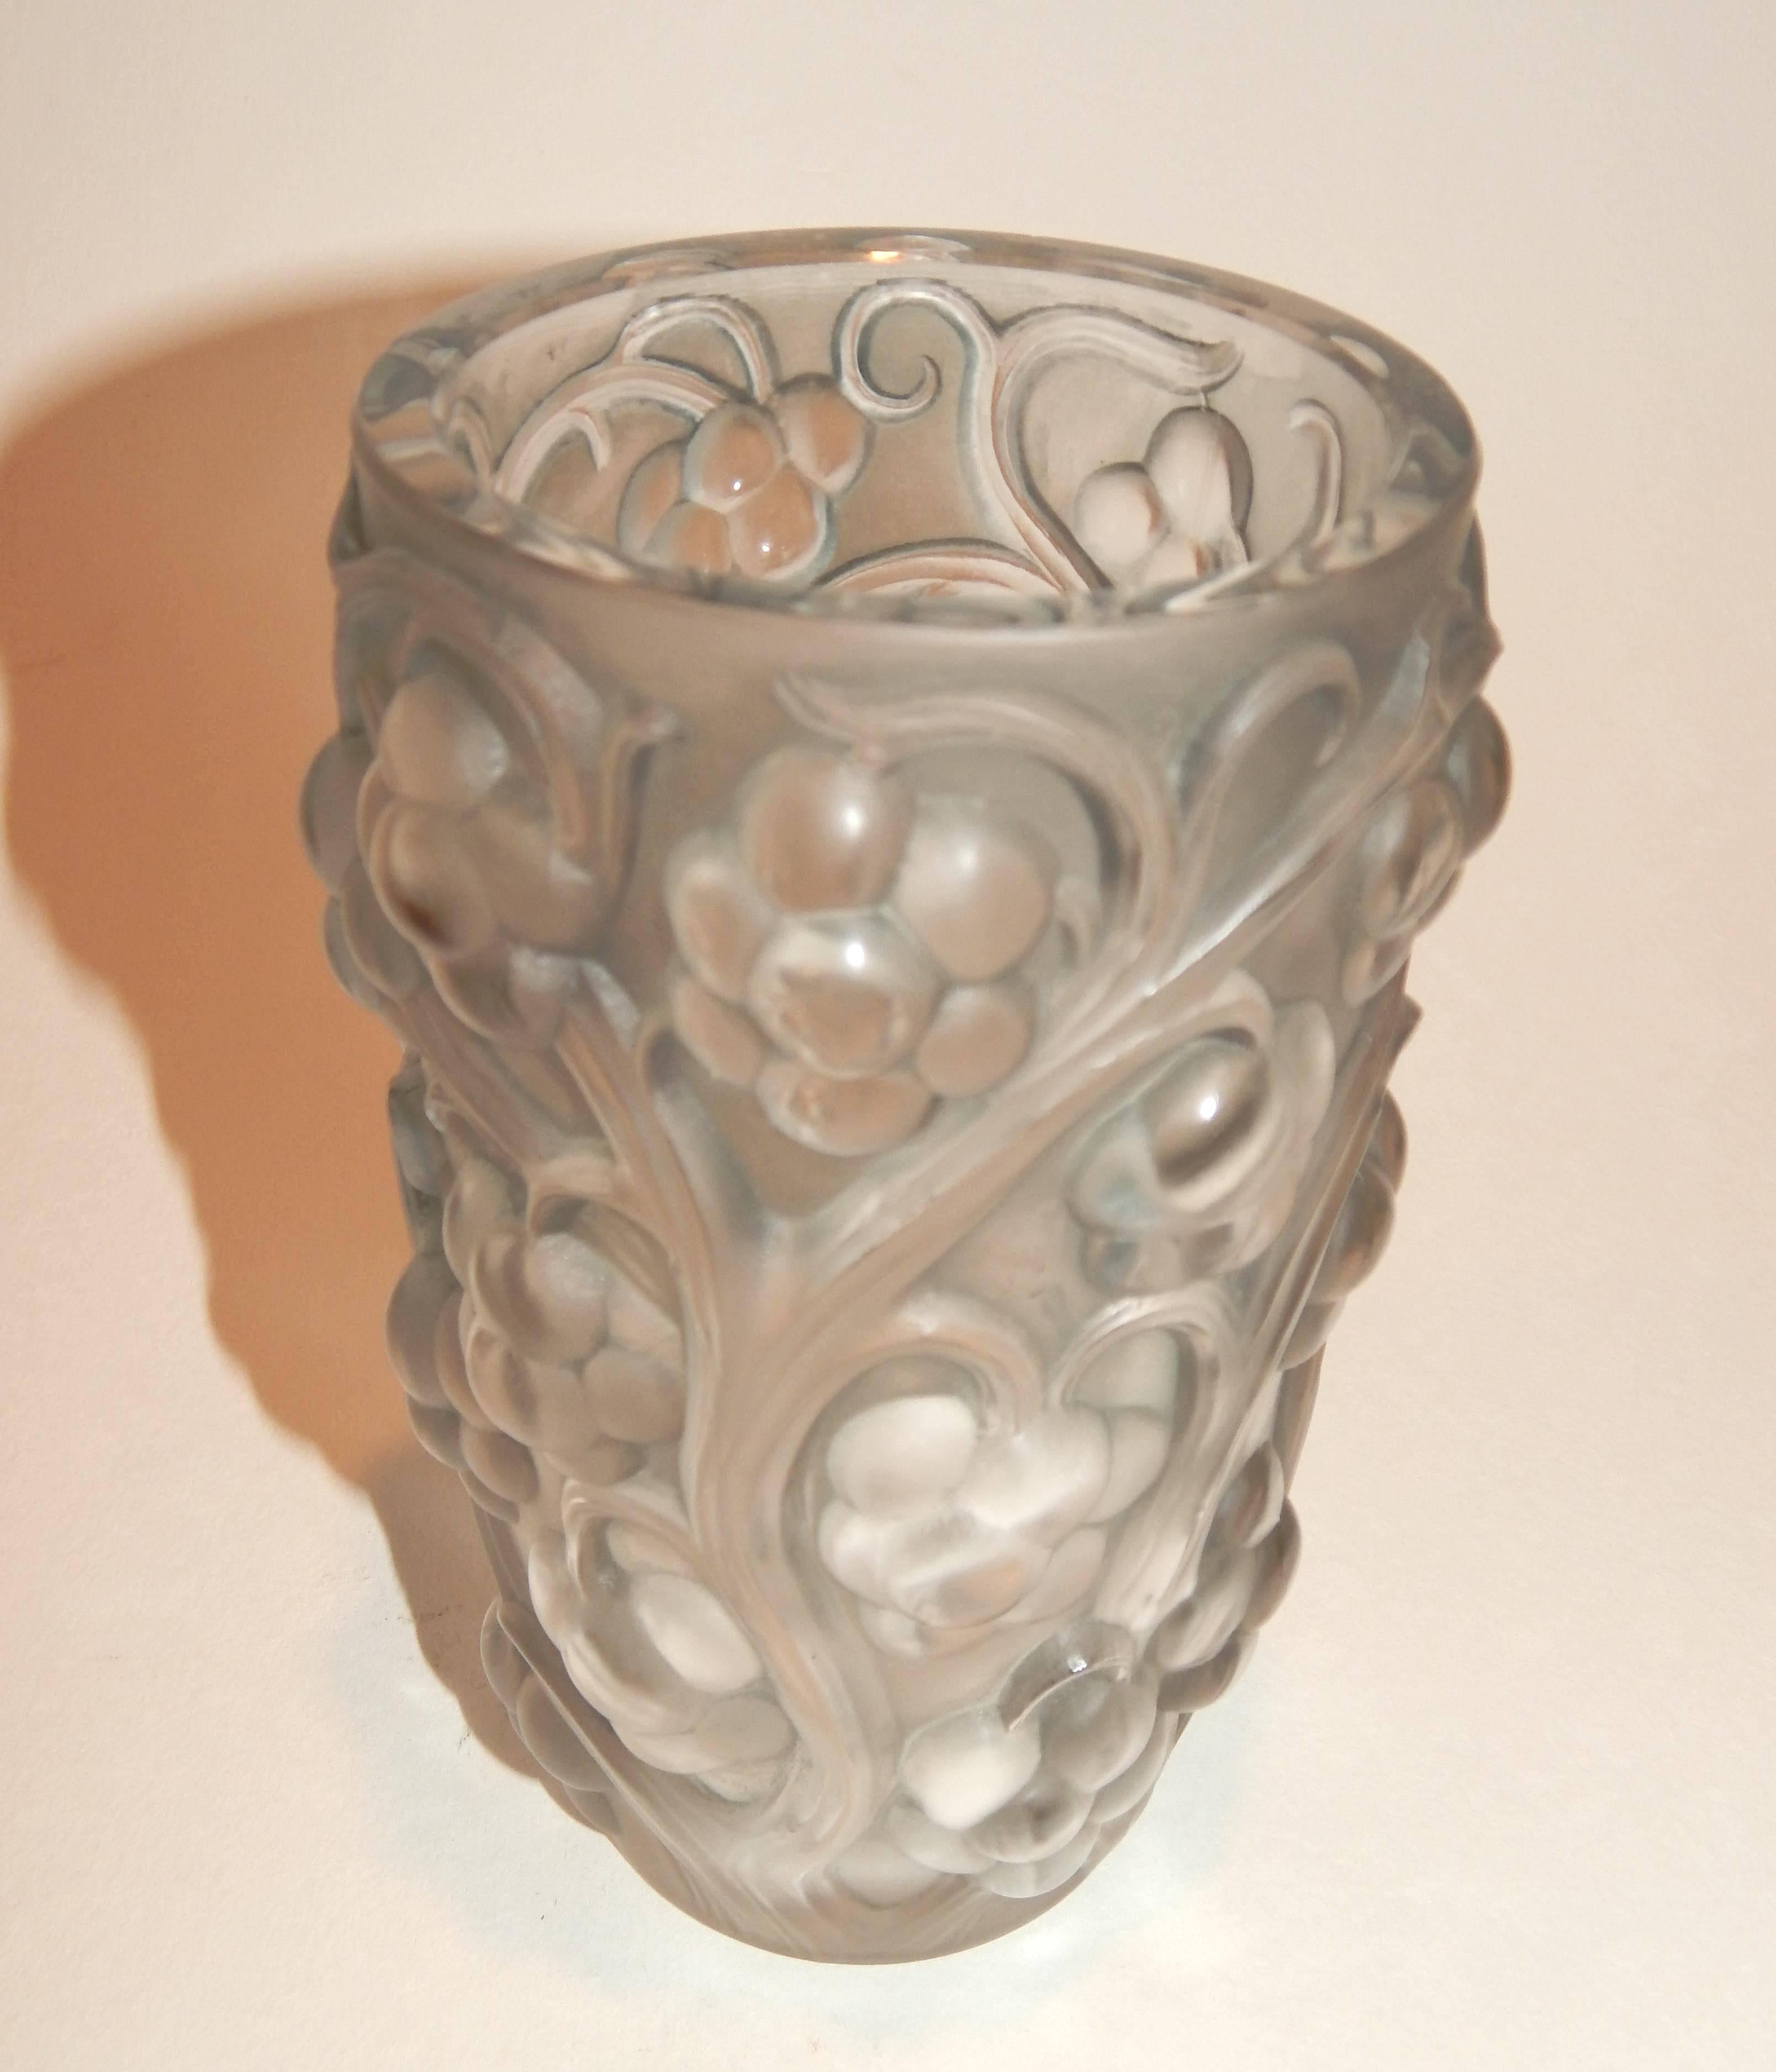 Ce magnifique vase moulé de R. Lalique est en parfait état.
Créé en 1928. Modèle no. 1032. Signature gravée : 